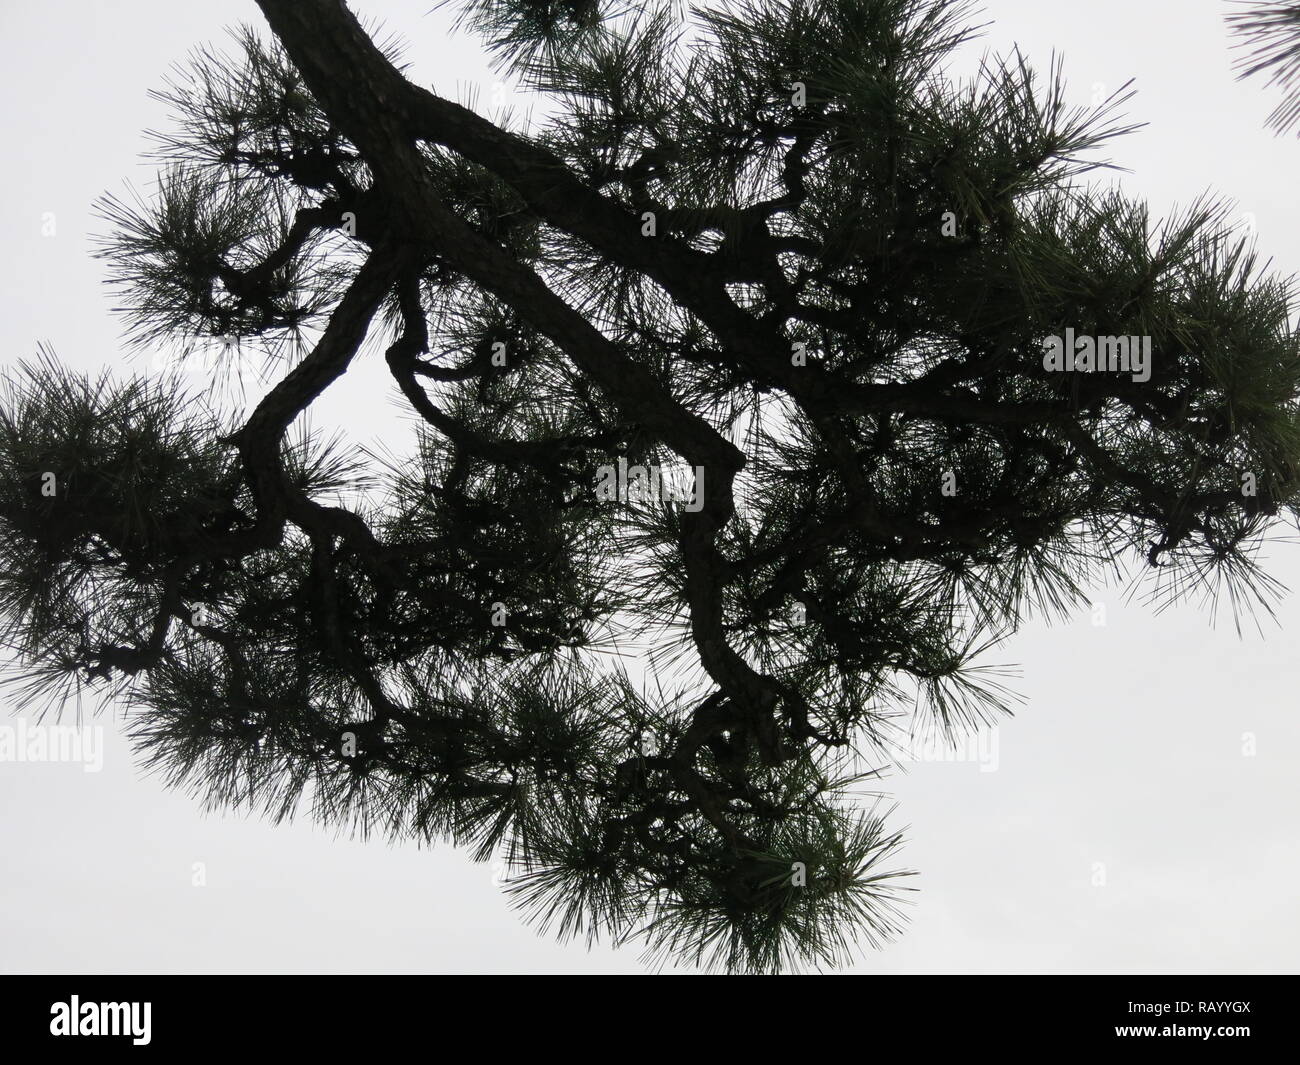 À la recherche jusqu'à travers la canopée d'un pin ou élagués japonais ; arbre nuage silhouette noire des branches contre le ciel Banque D'Images